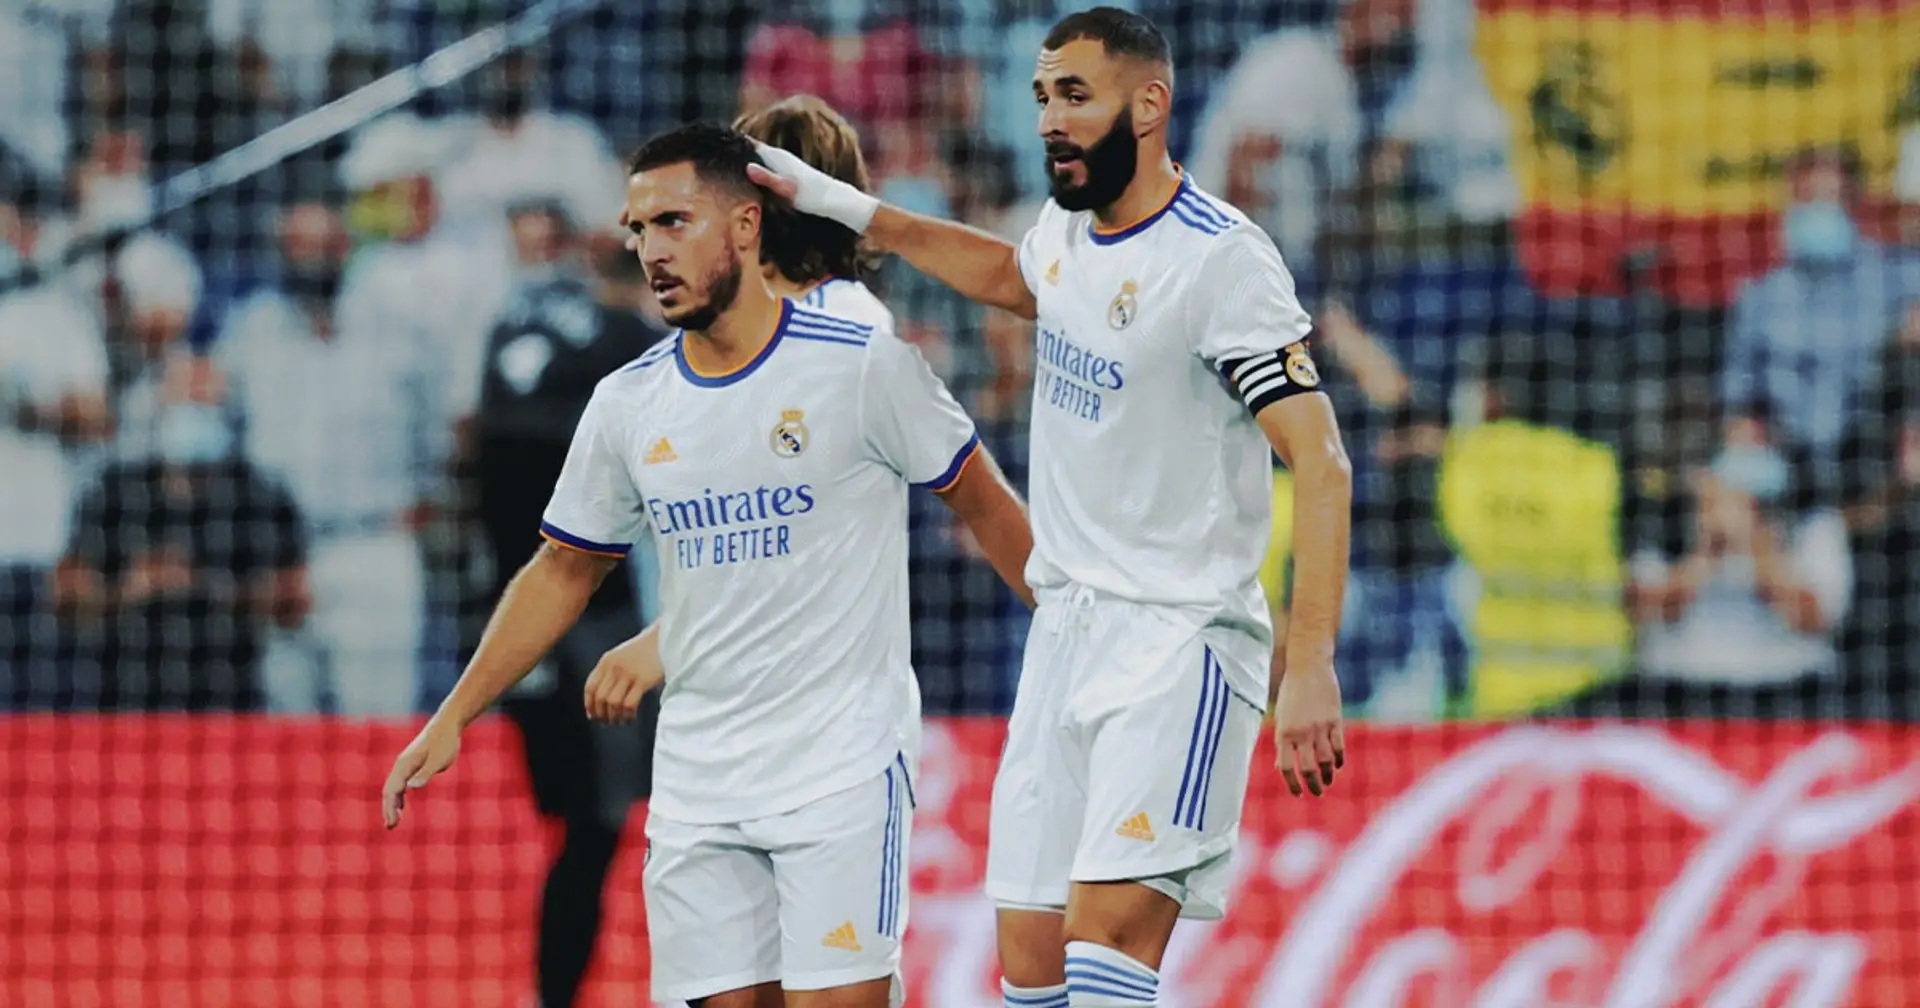 Benzema et Modric 9, Camavinga 7: les notes des joueurs de Madrid après la victoire poussive face au Celta Vigo